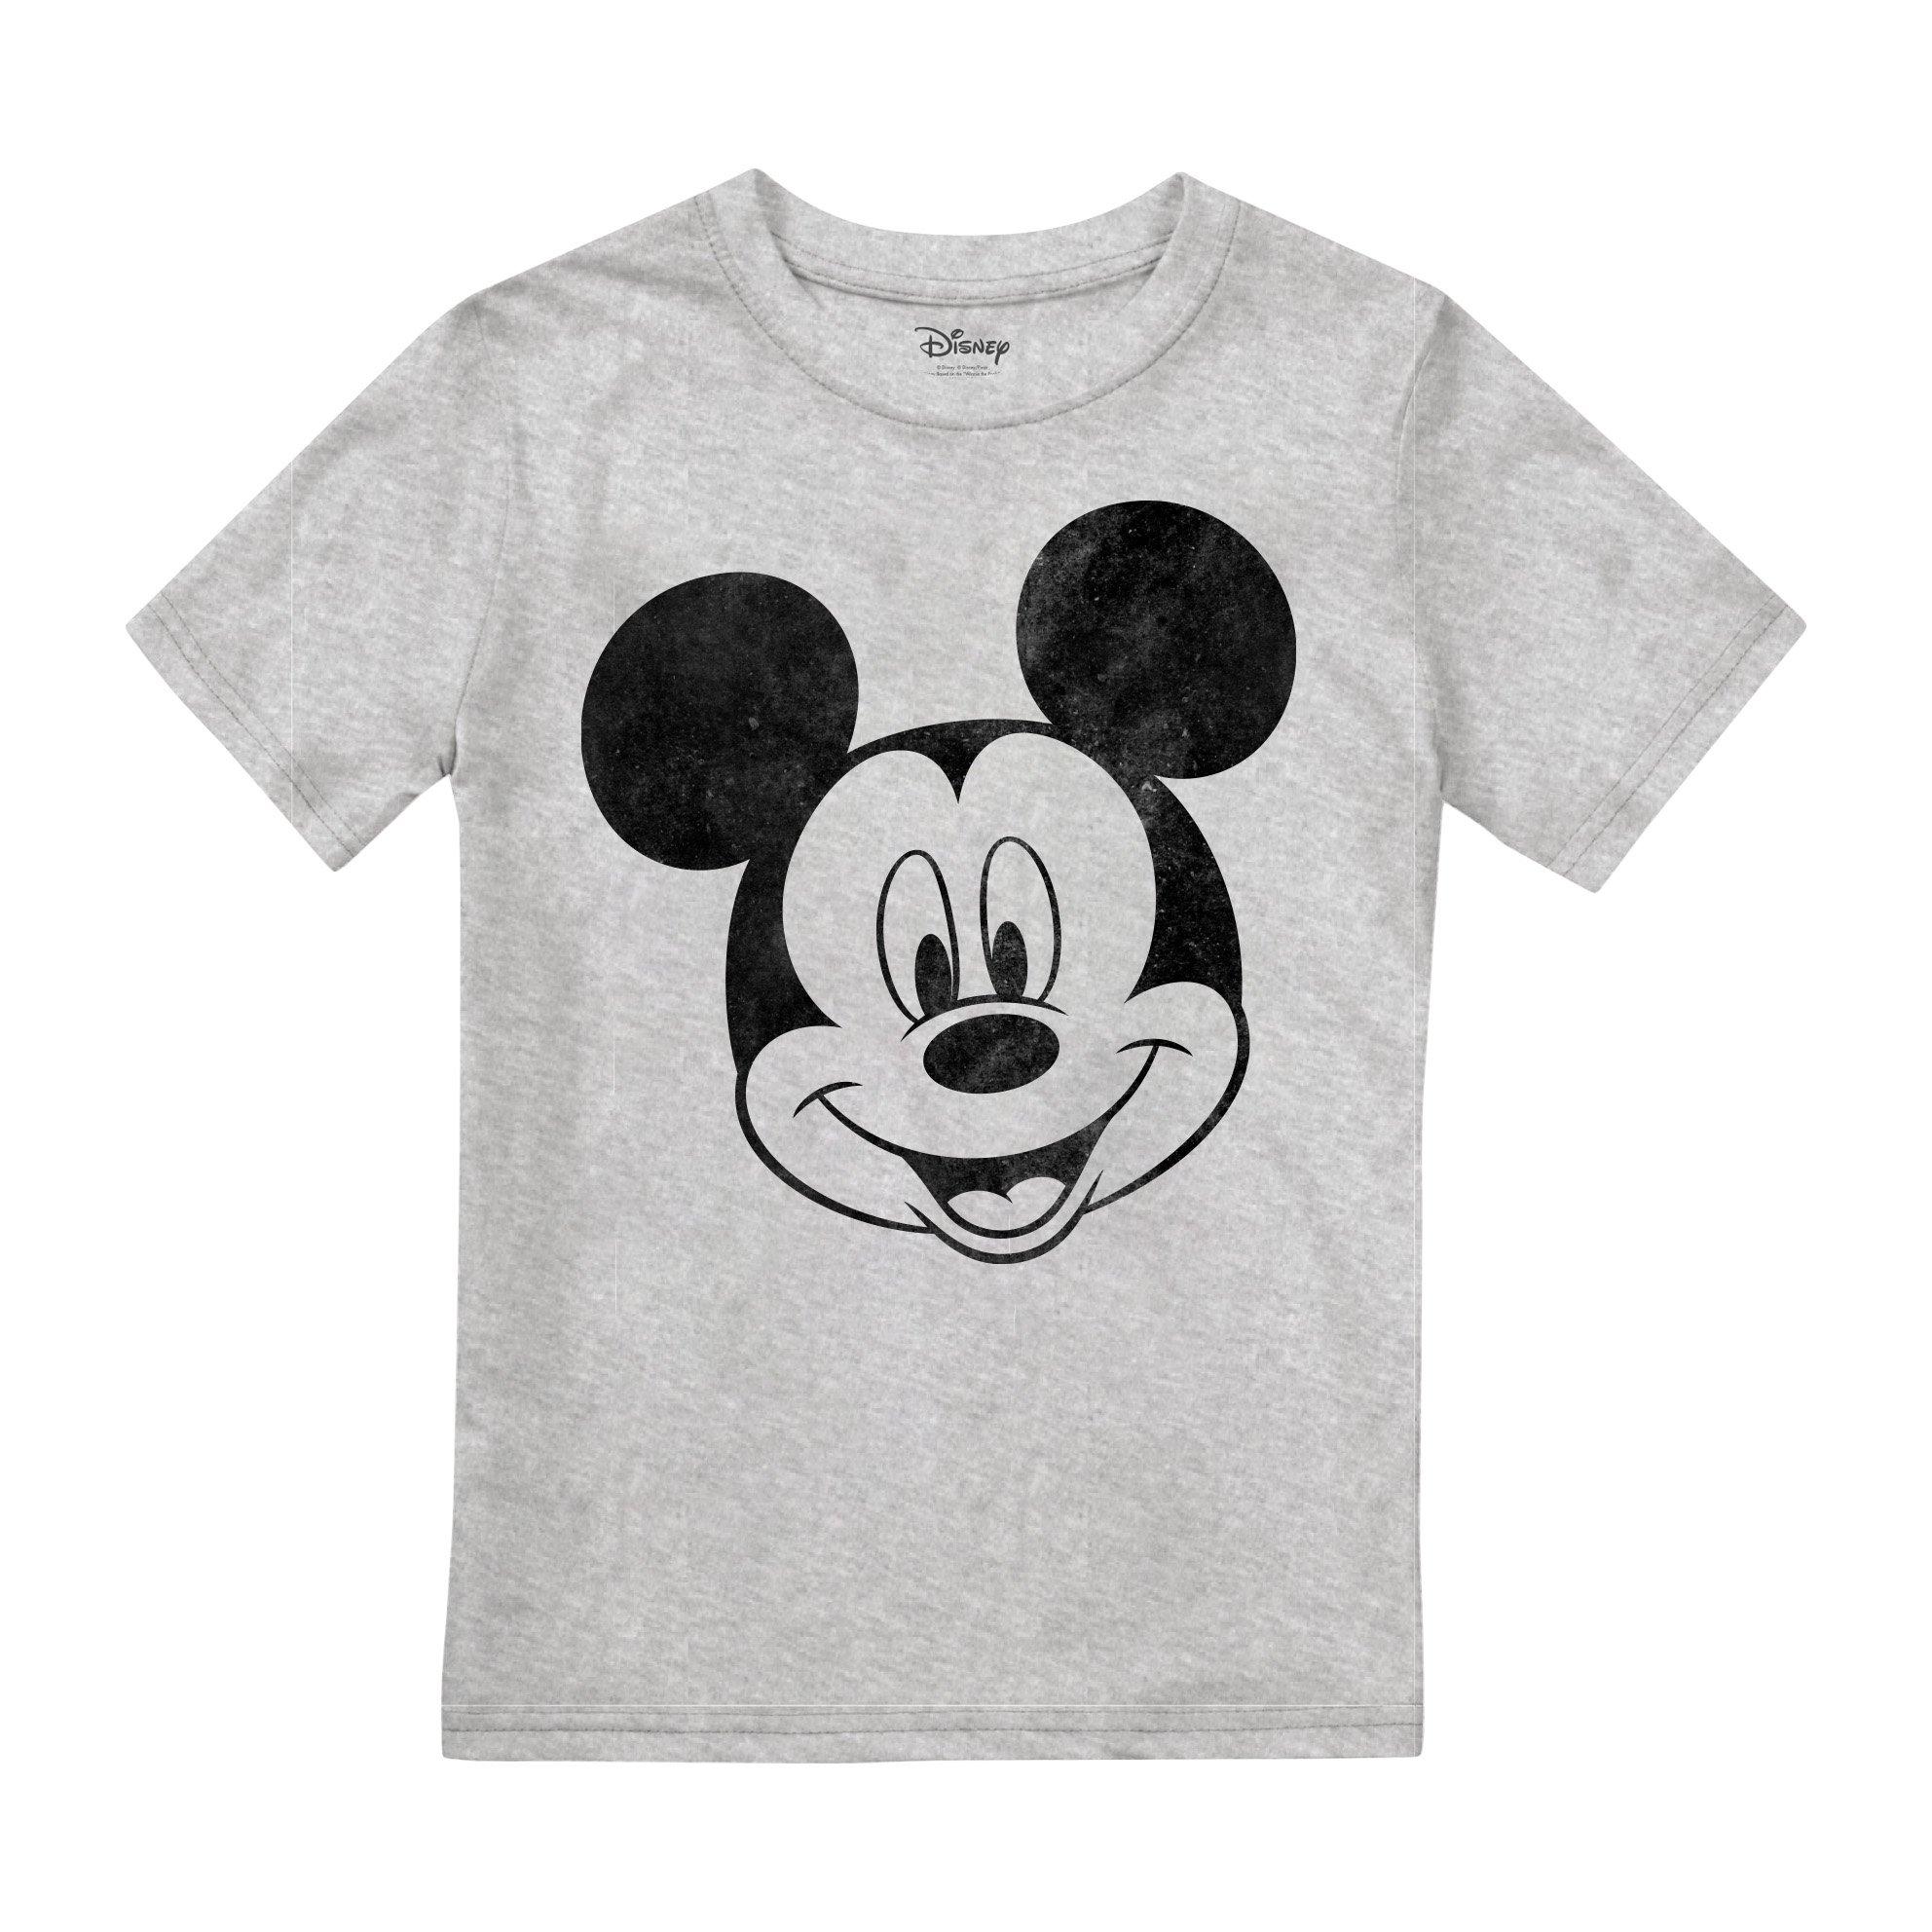 Однотонная футболка с Микки Маусом Disney, серый набор посуды disney микки маус 4 предмета